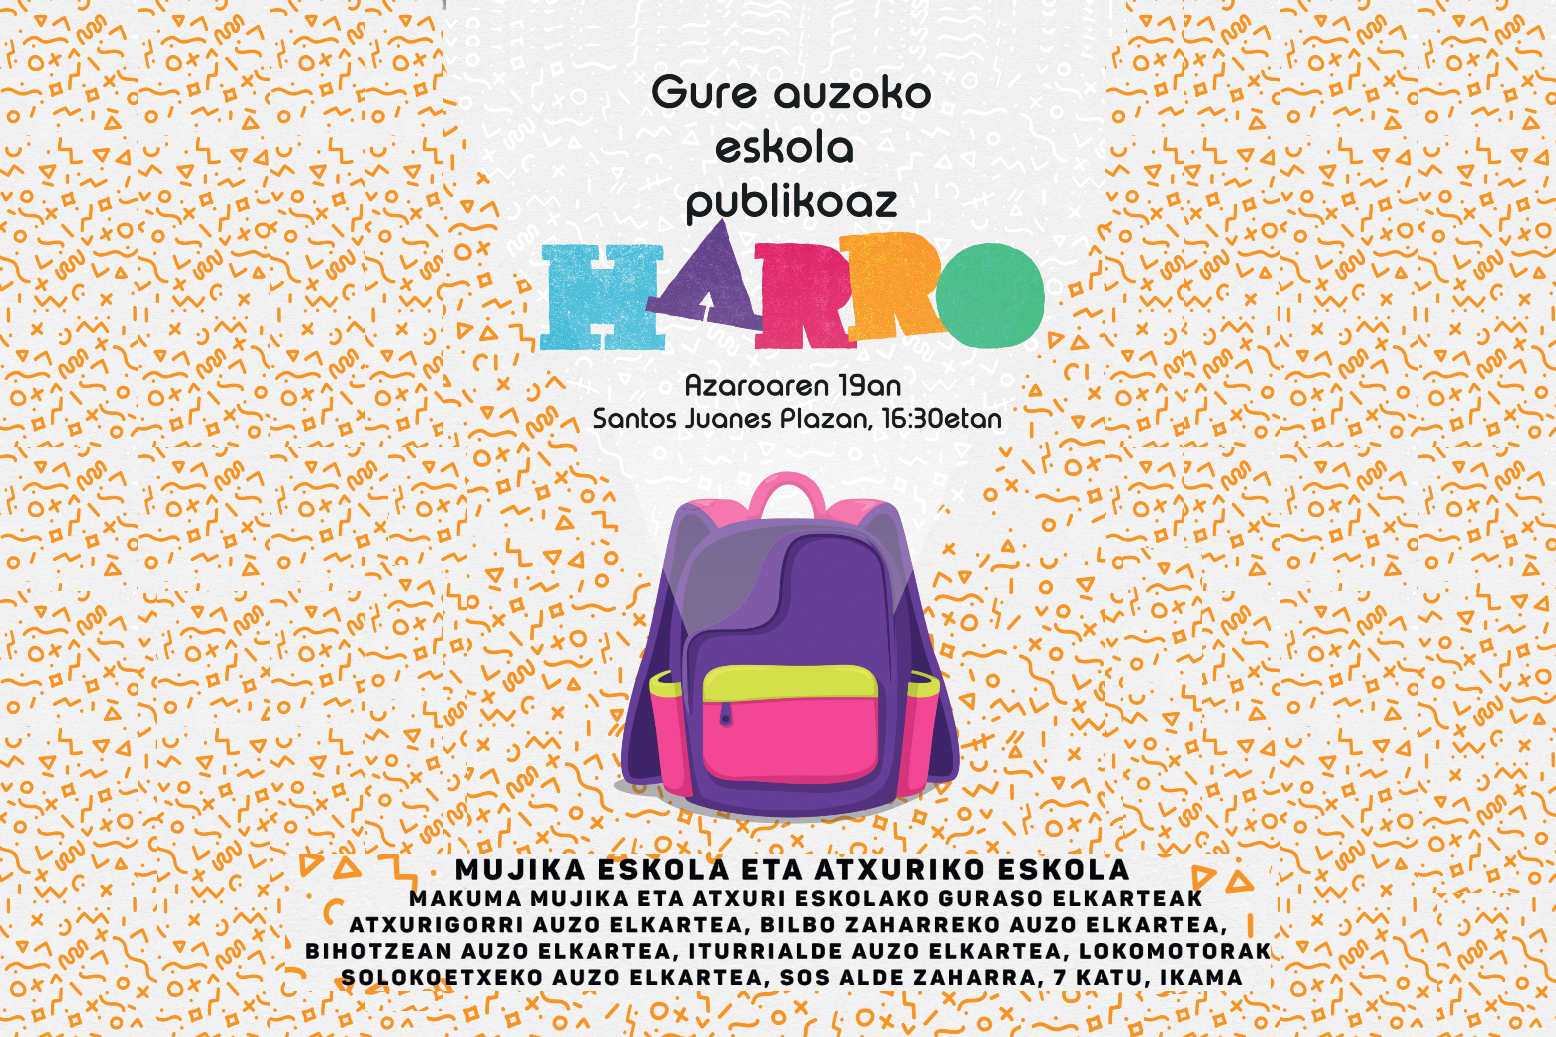 escuela-pública-educación-mujika-eskola-atxuri-bilbao-ayuntamiento-barrios